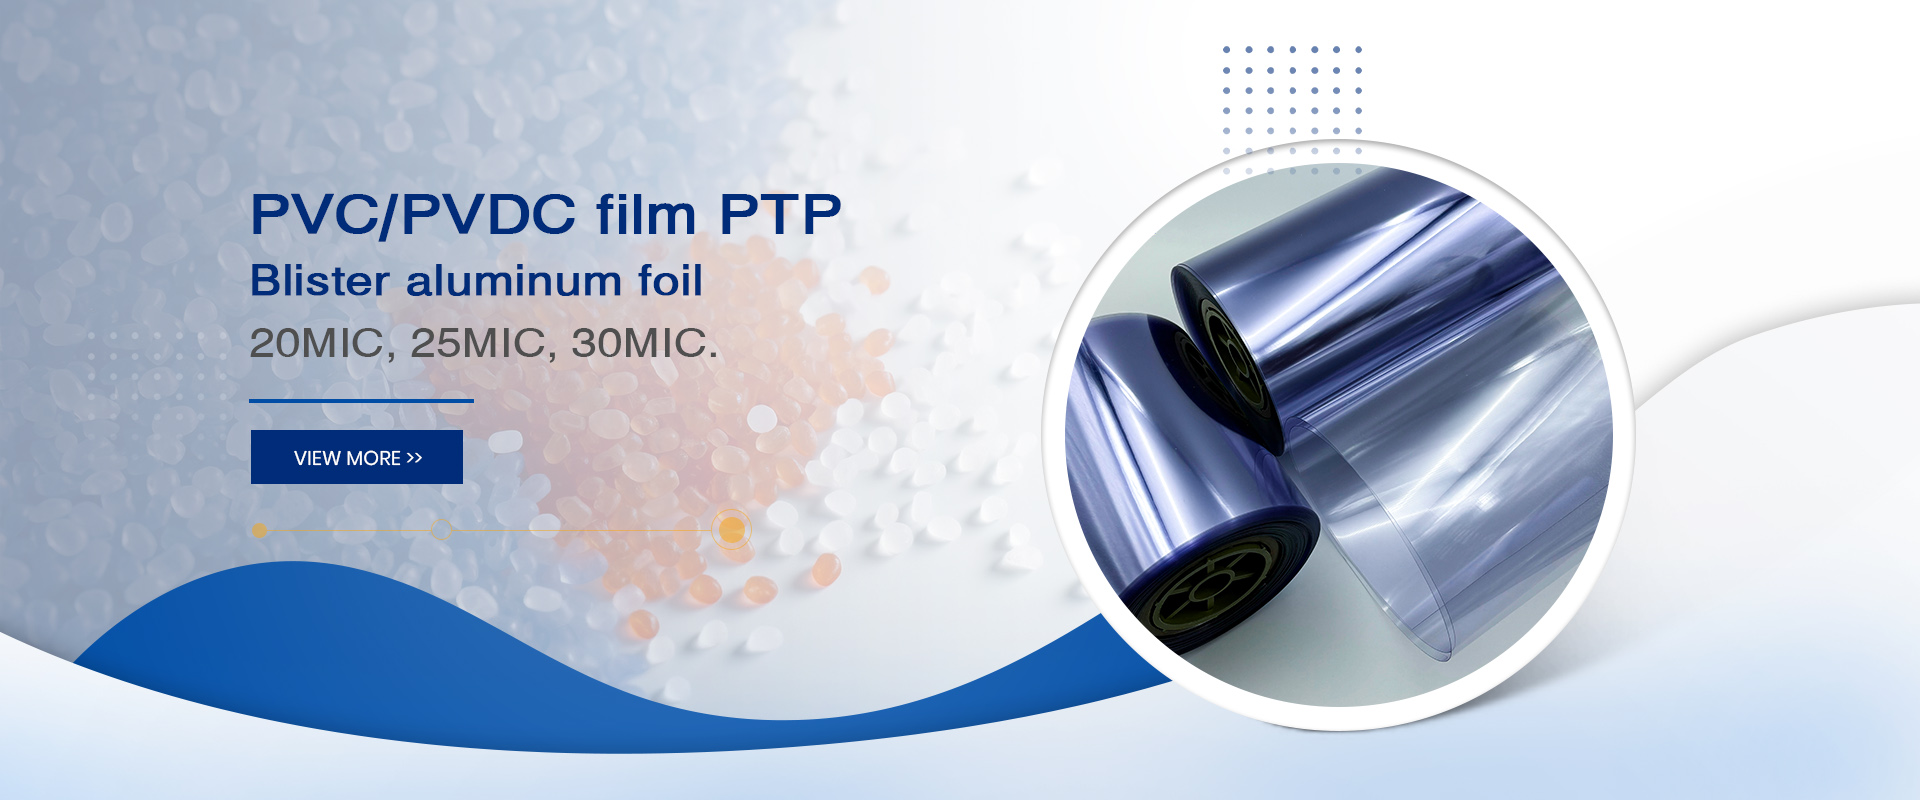 Película de PVC/PVDC PTP